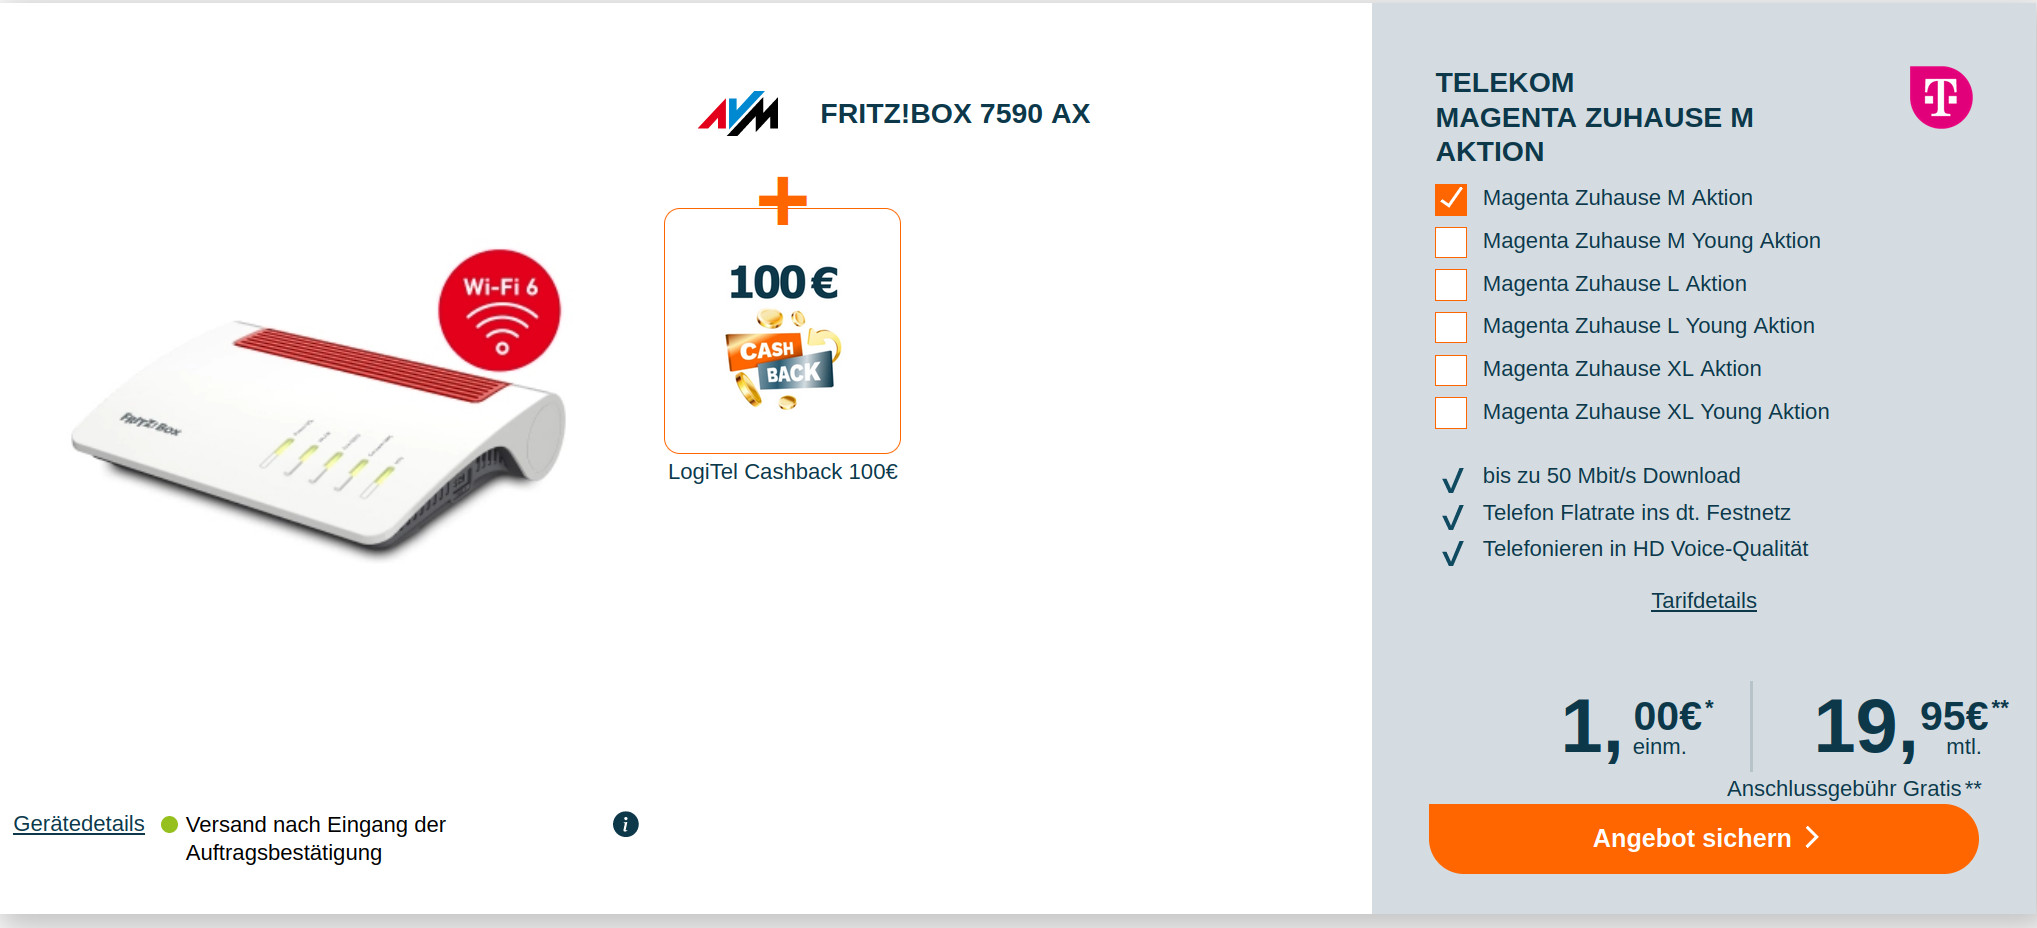 Telekom Magenta Zuhause Aktion: 100 Euro Cashback plus Fritzbox 7590 AX mit Magenta Tarif für mtl. 19,95 Euro